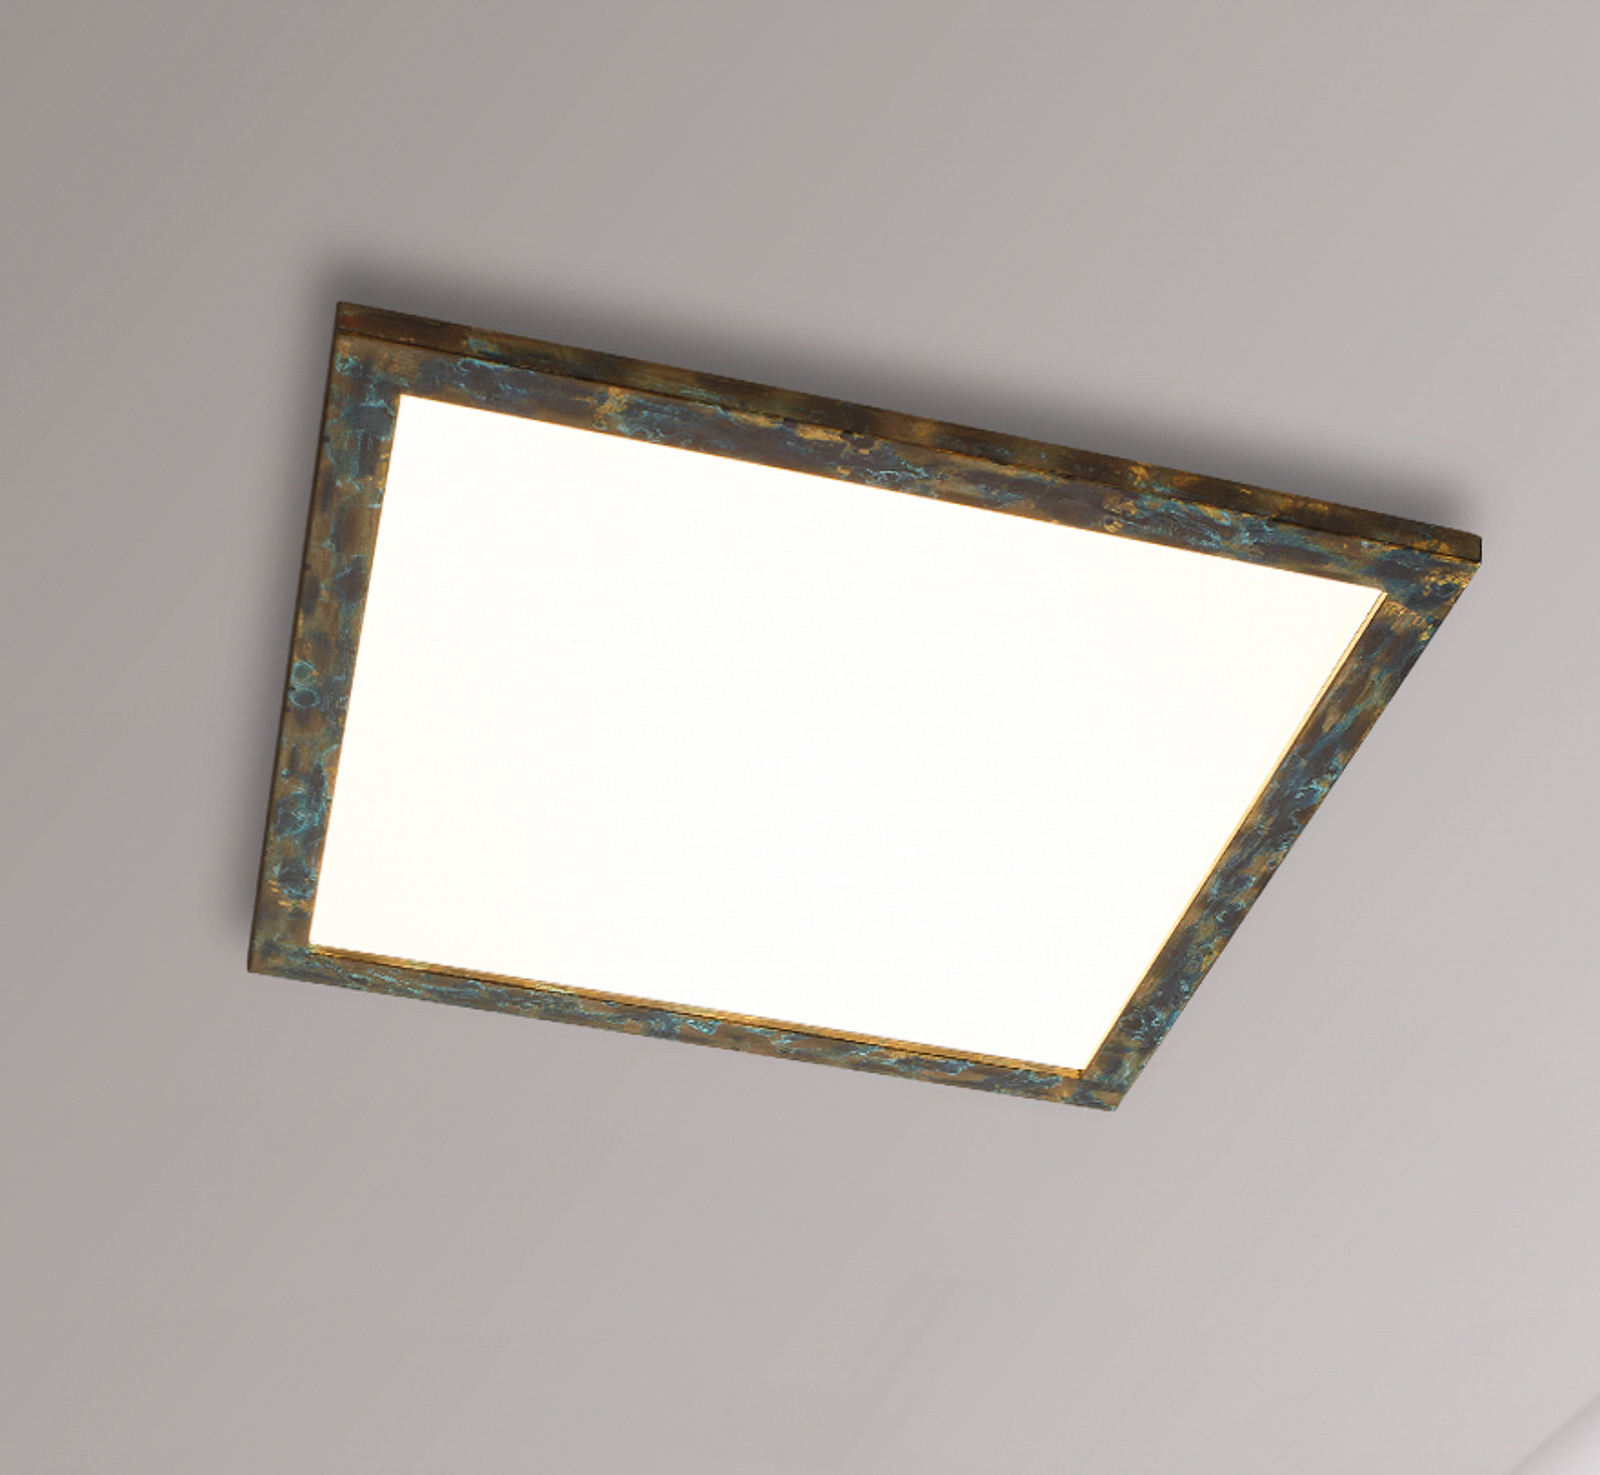 Panel LED Quitani Aurinor, pátina dorada, 68 cm